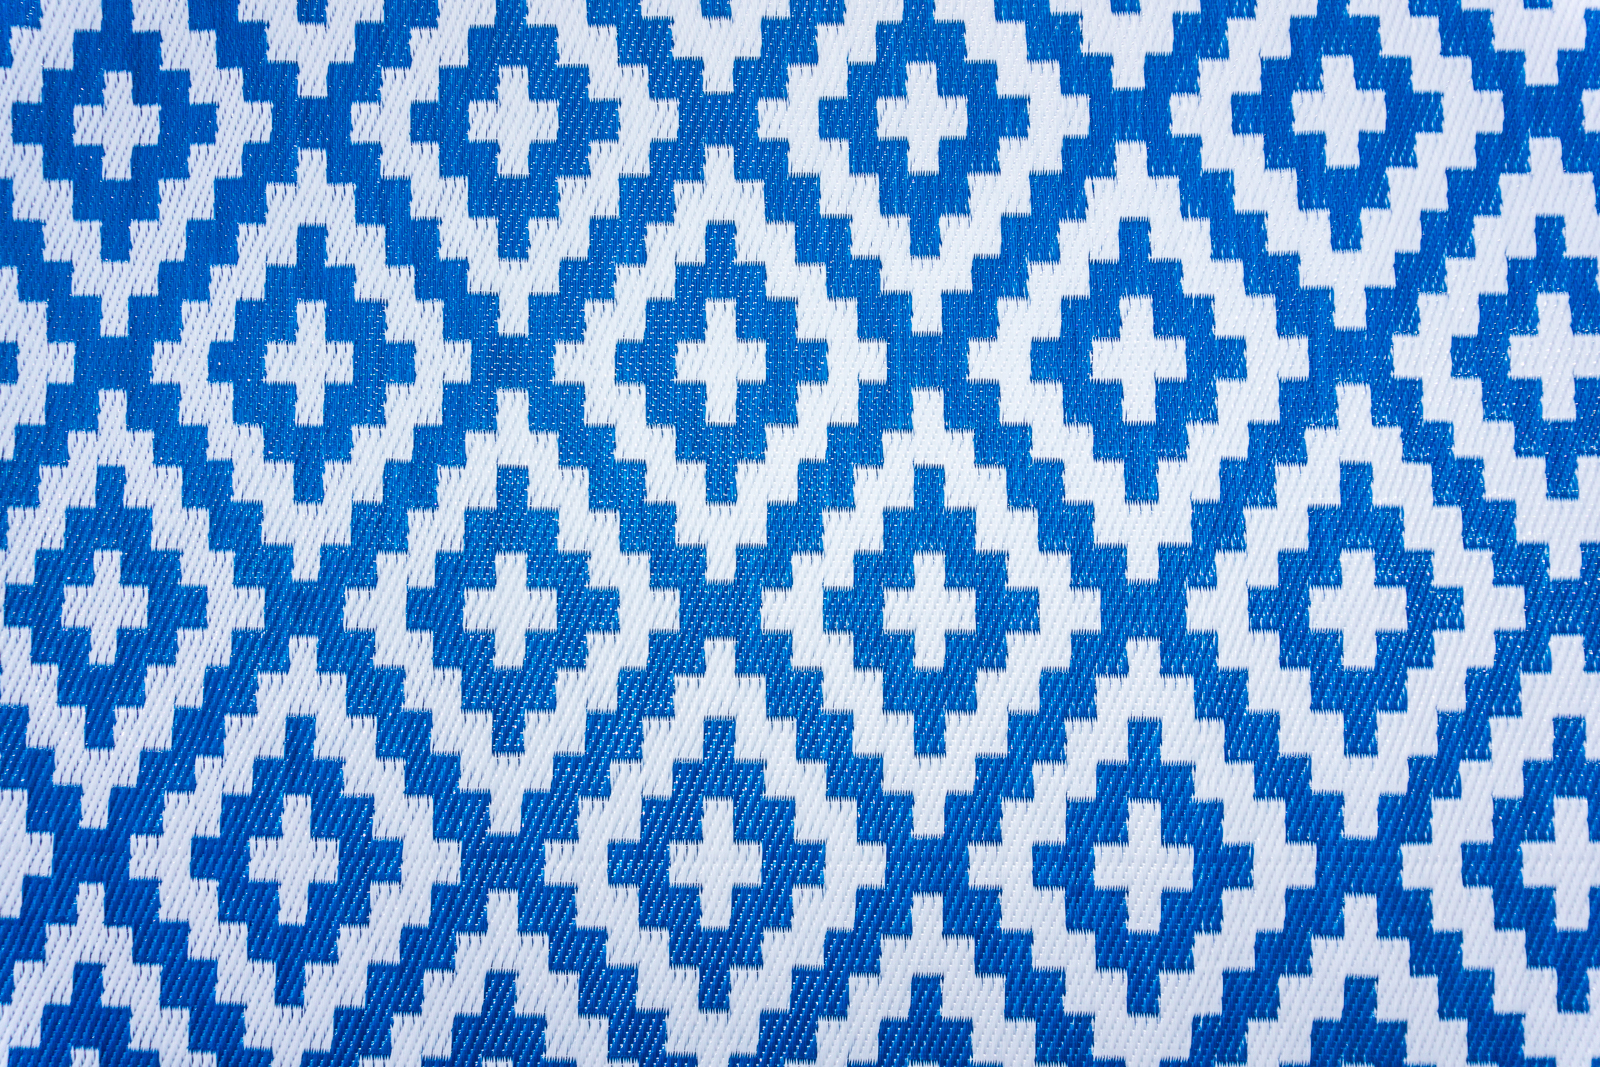 Jet-Line Synthetic-Rug "Austin", blue 120 x 180 cm